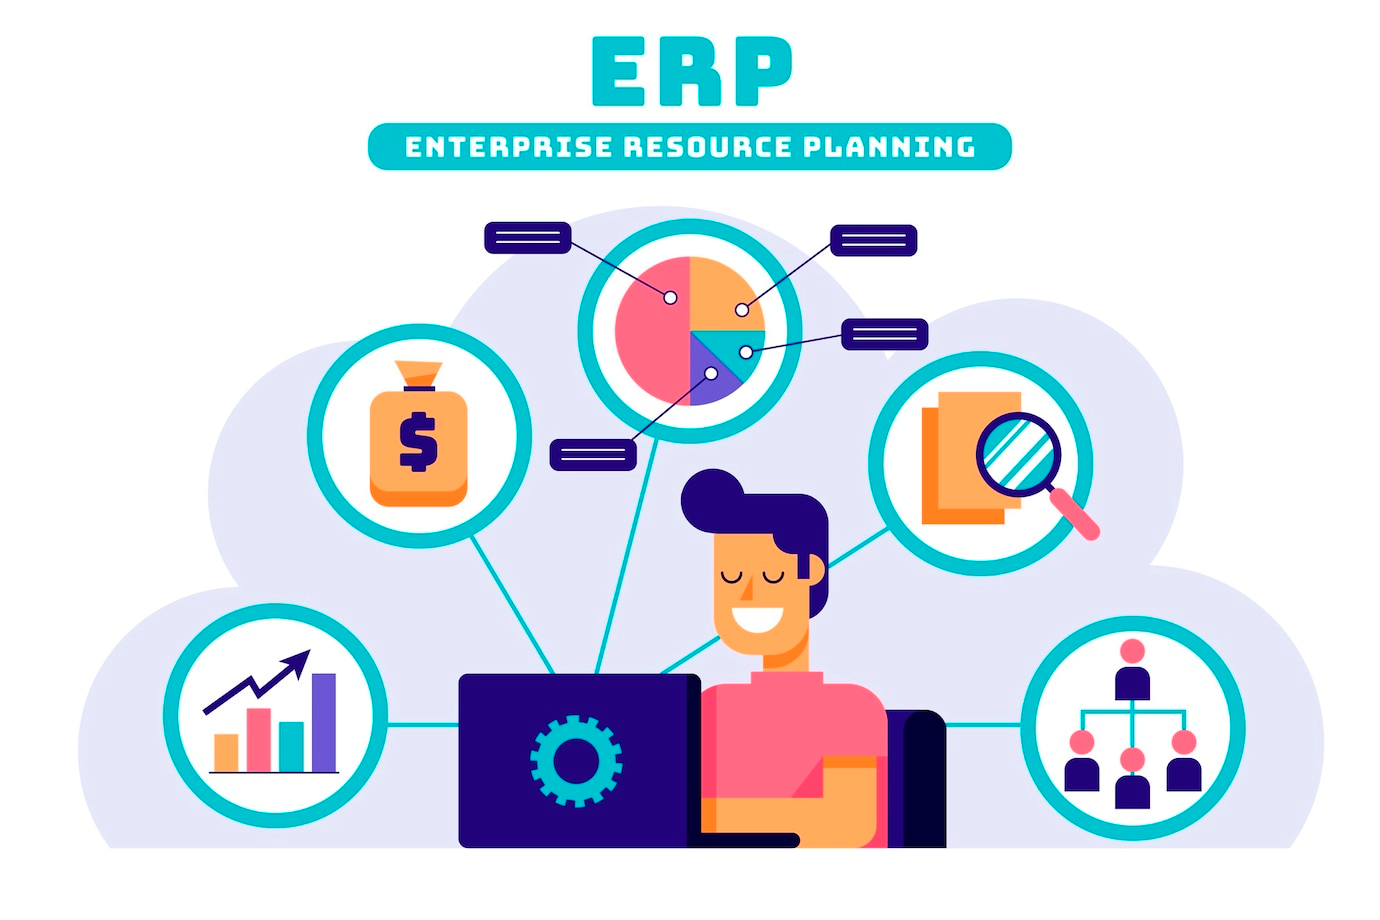 ¿Qué es ERP y para qué sirve?